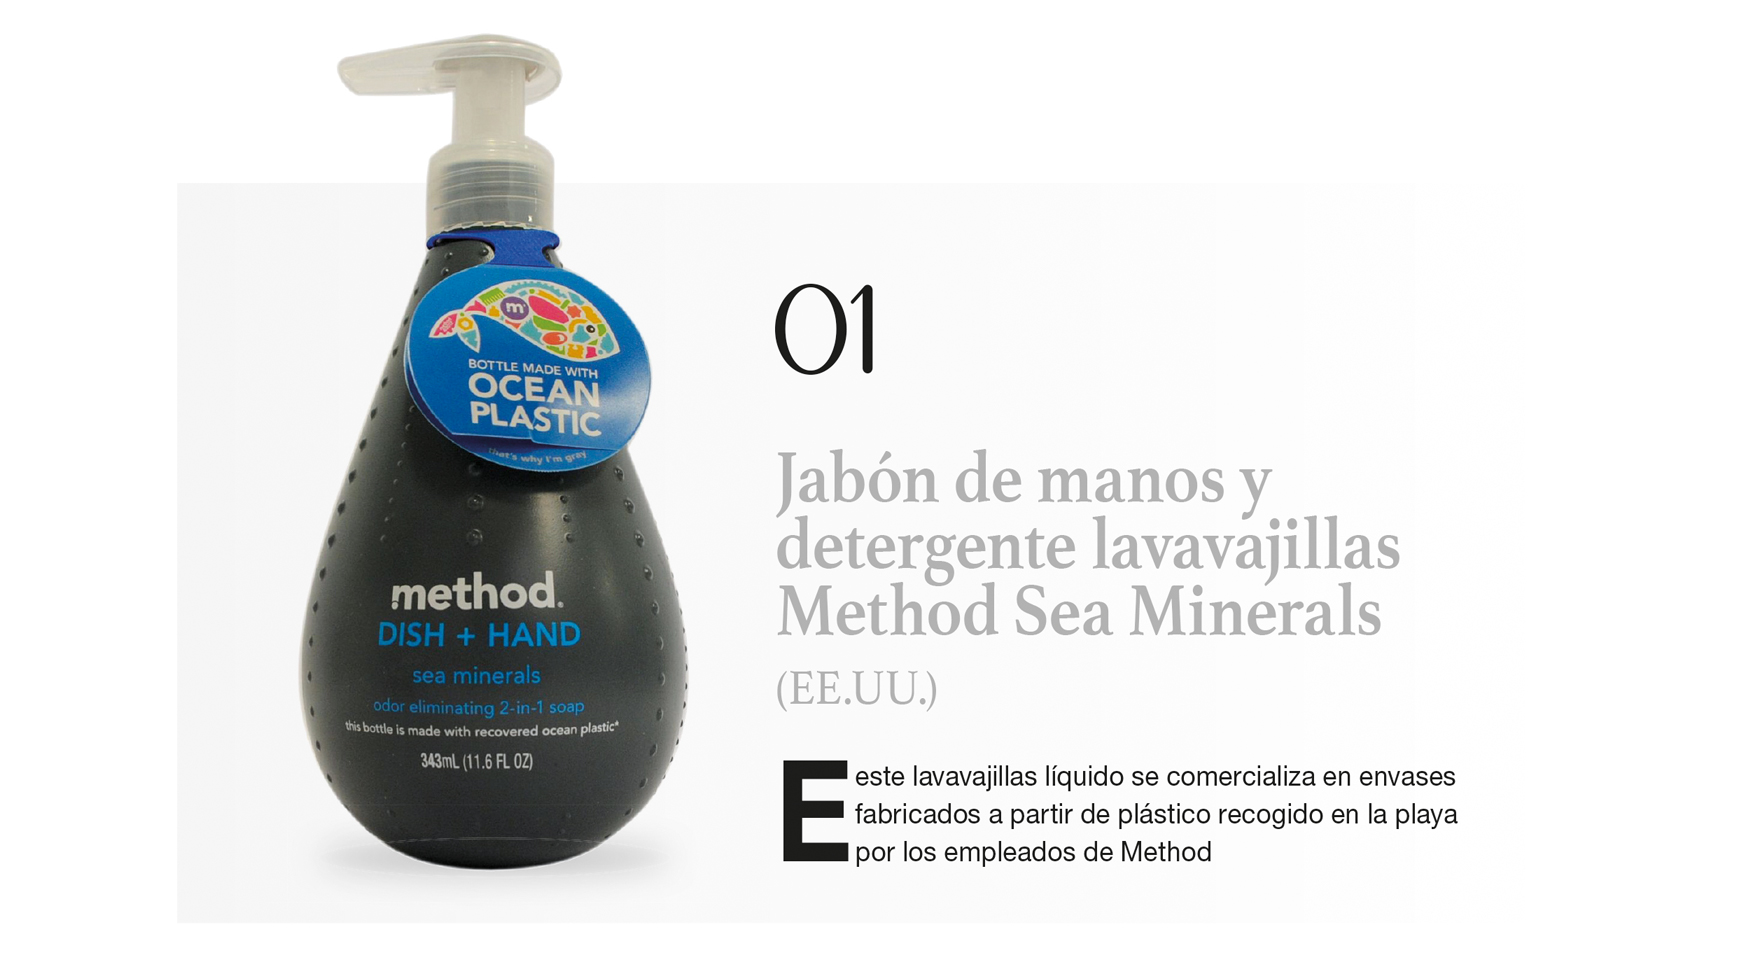 Jabón de manos y detergente lavavajillas Method Sea Minerals (EE.UU.)